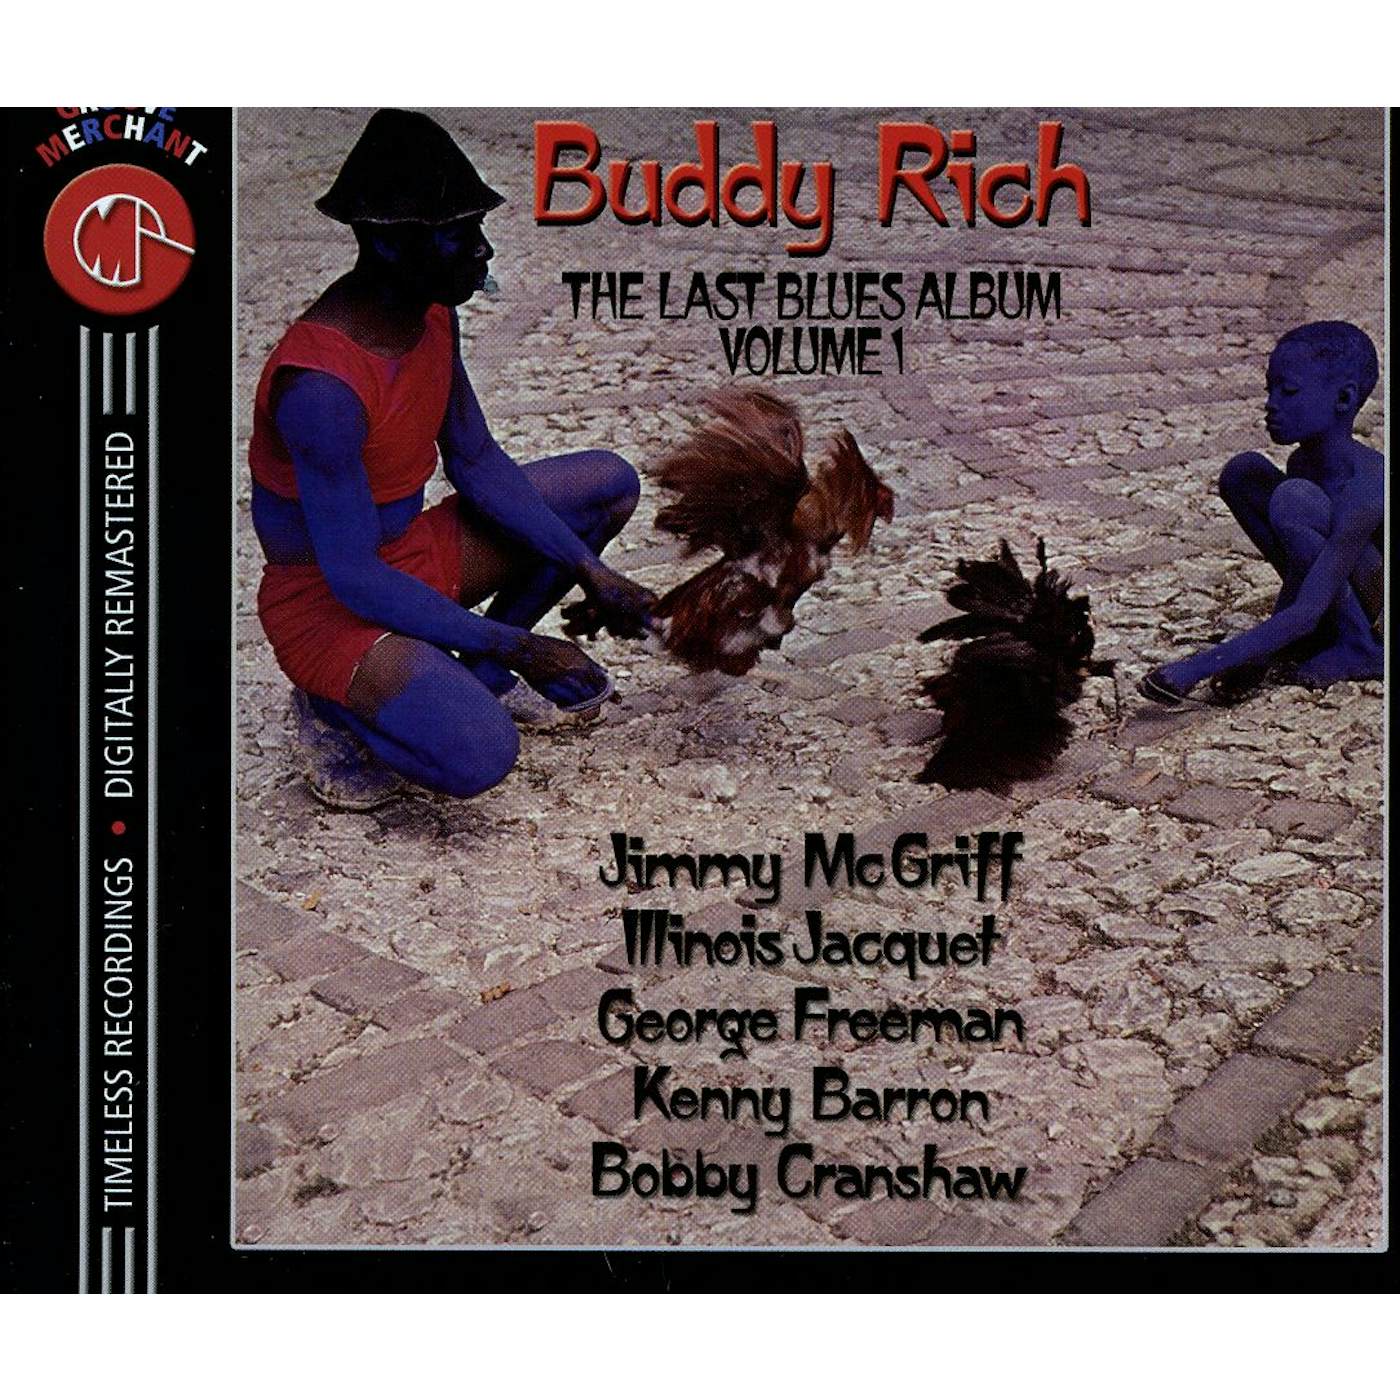 Buddy Rich LAST BLUES ALBUM 1 CD